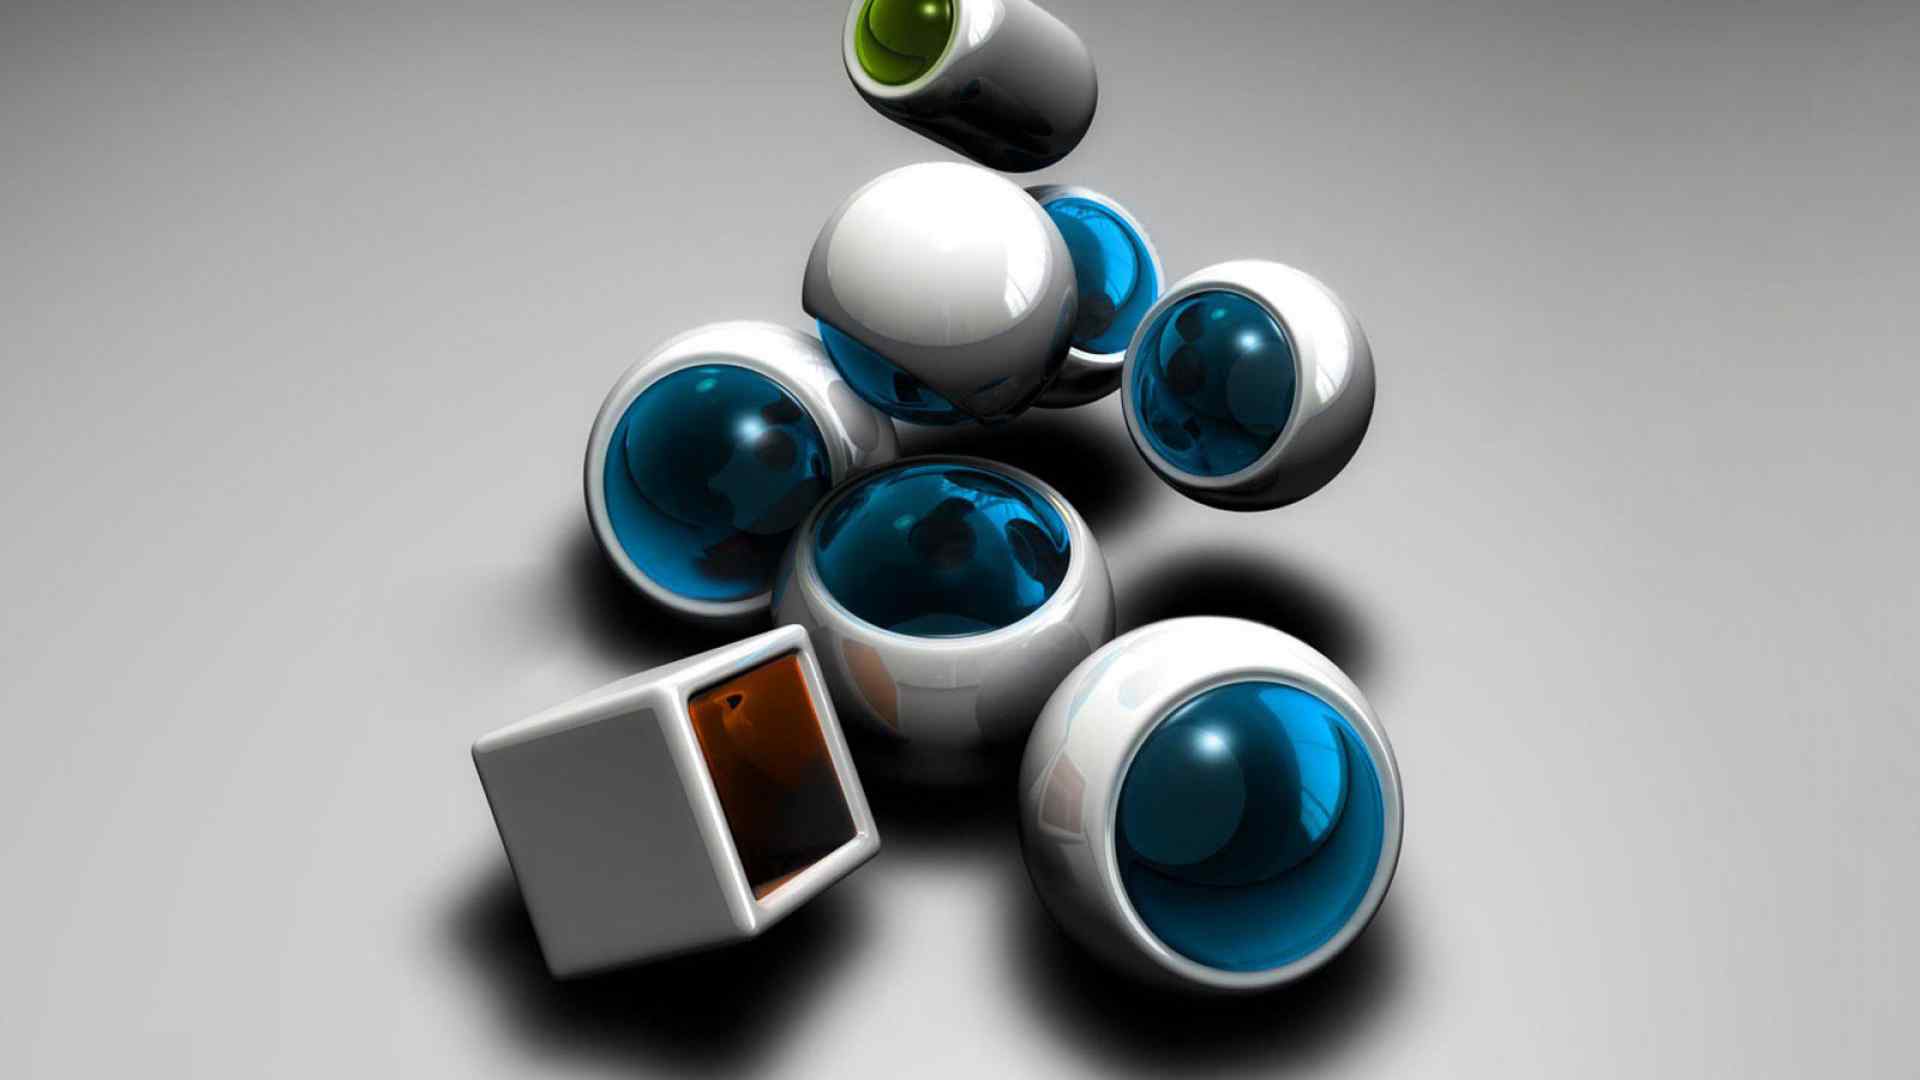 抽象艺术3D球体创意设计高清桌面壁纸图片大全